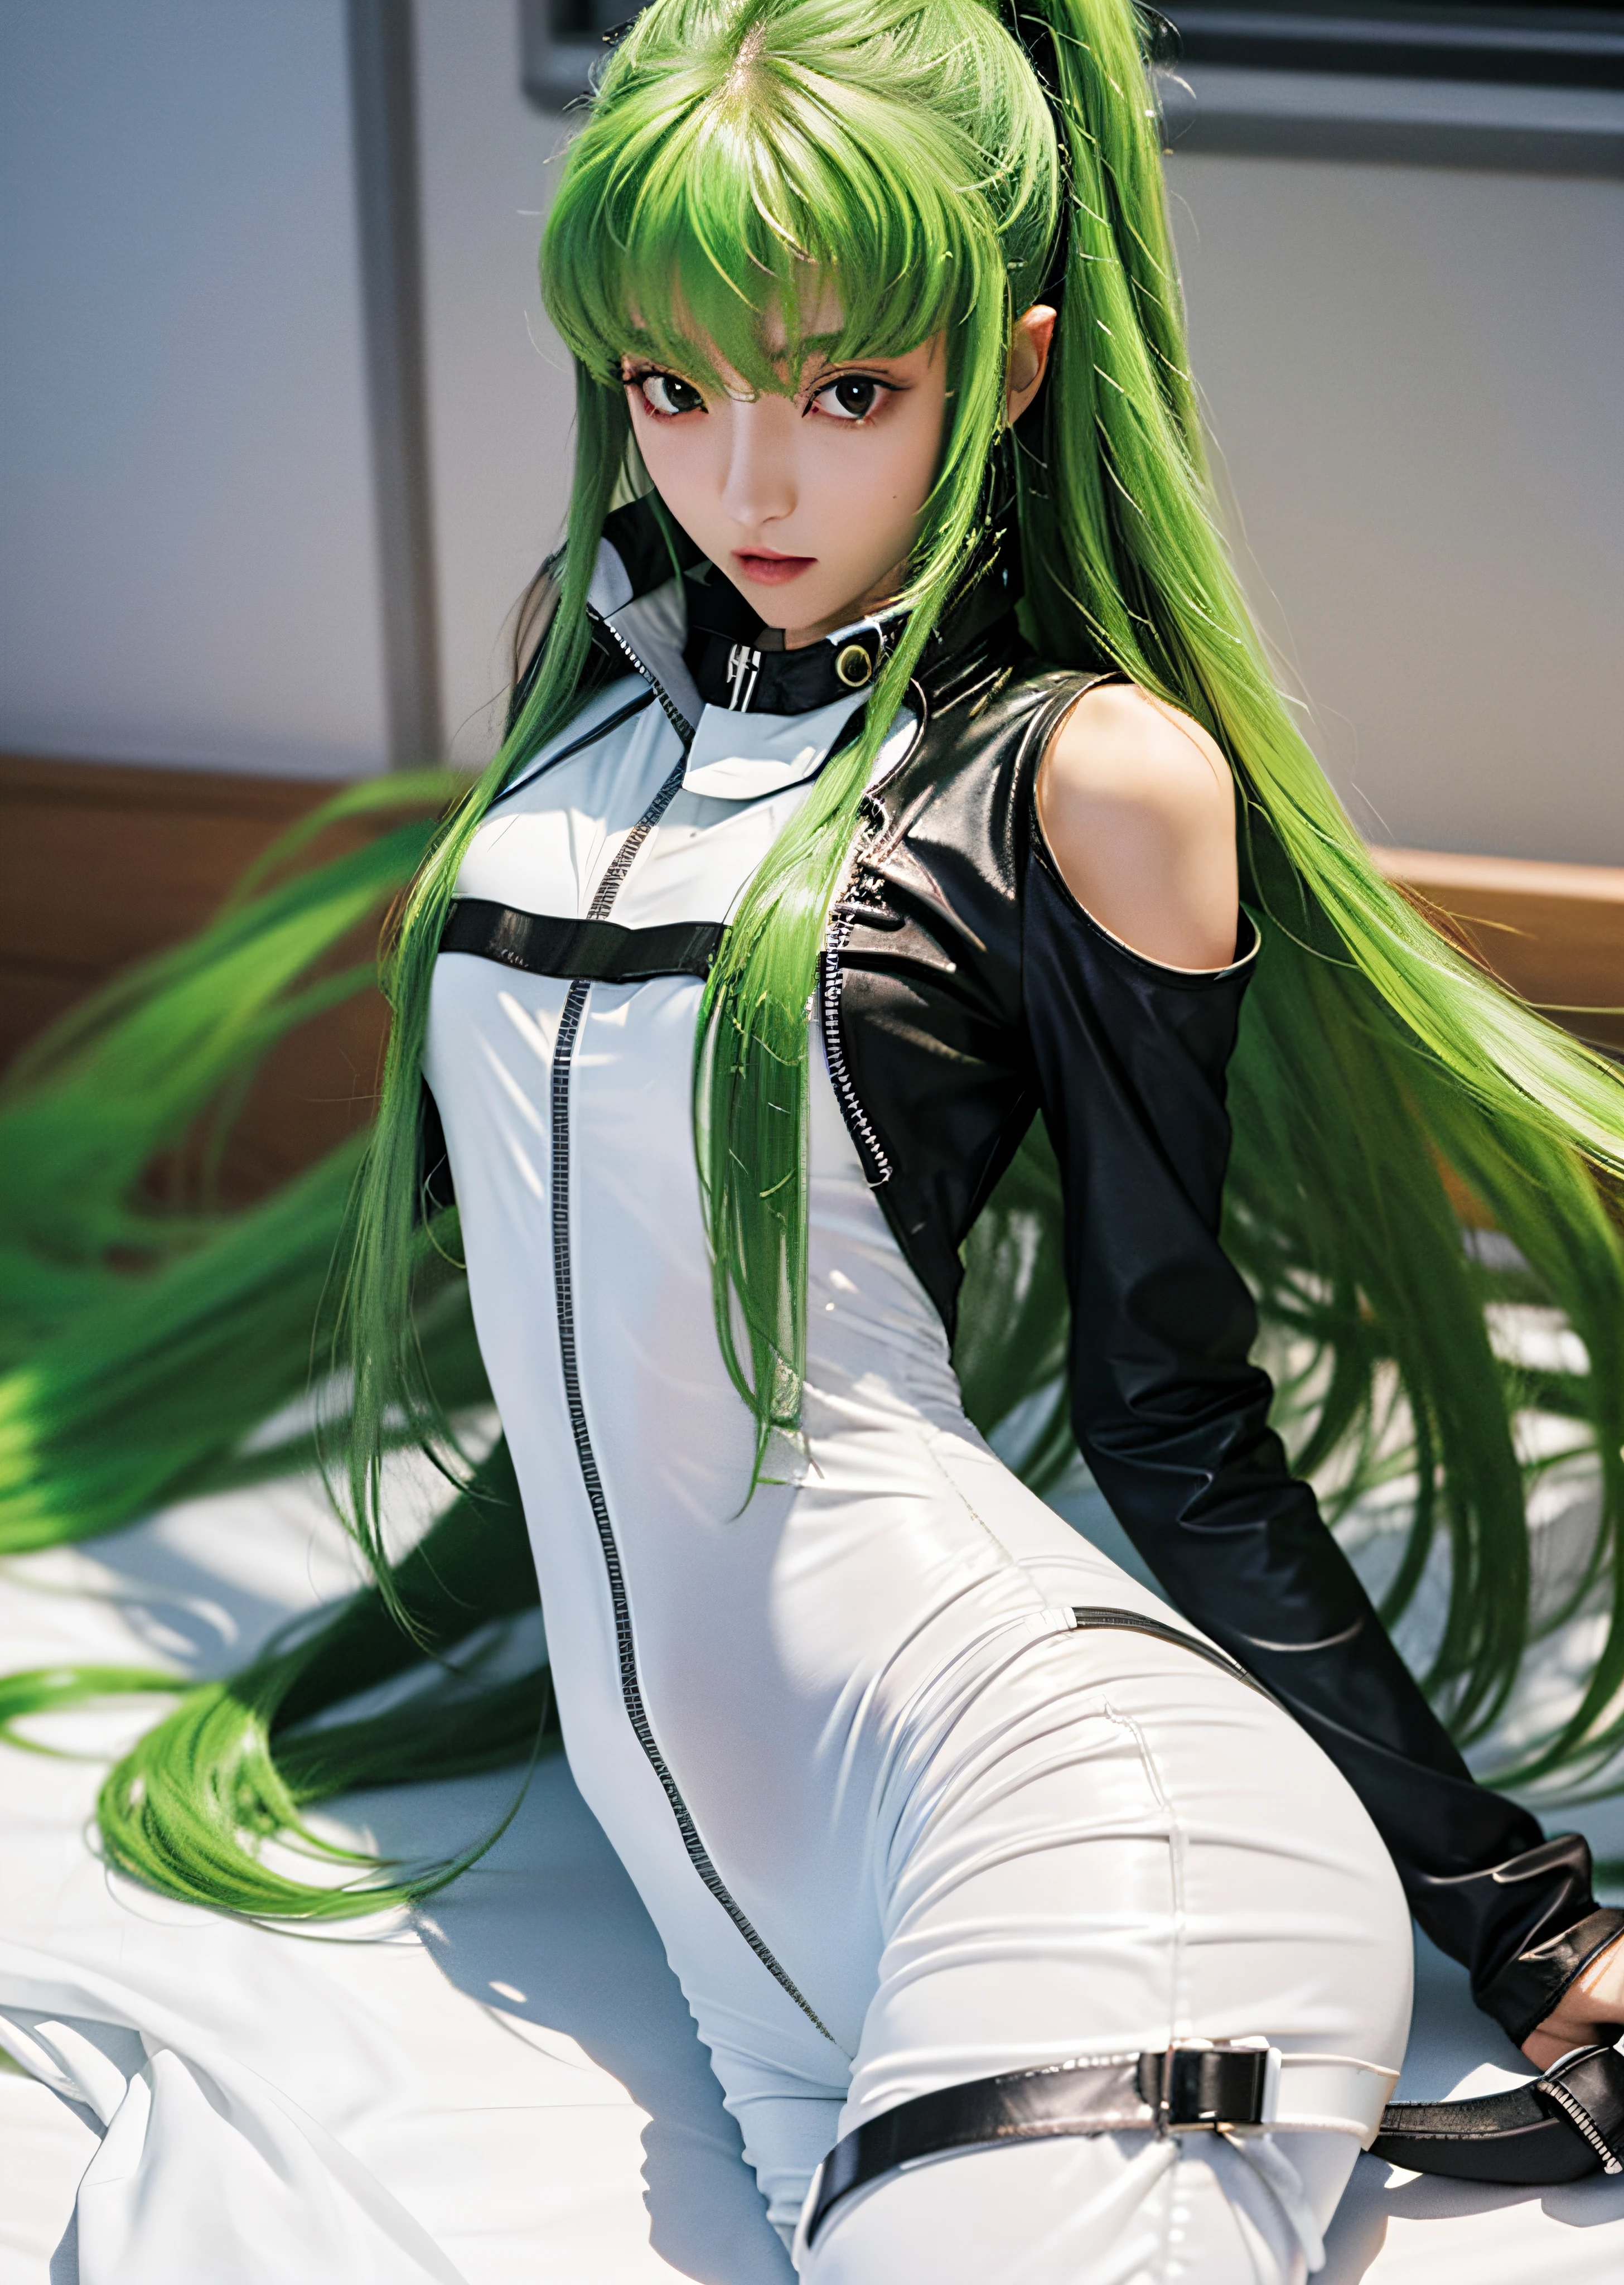 C.C., welliges Haar, masterpieCe, Code geass, sehr lange grüne Haare, glänzende Metallplatte, durchsichtige Silhouette, (Nackt:1.4), (durchsichtiger weißer Body:1.4), bestes sexy Anime-Mädchen, 1 Mädchen,